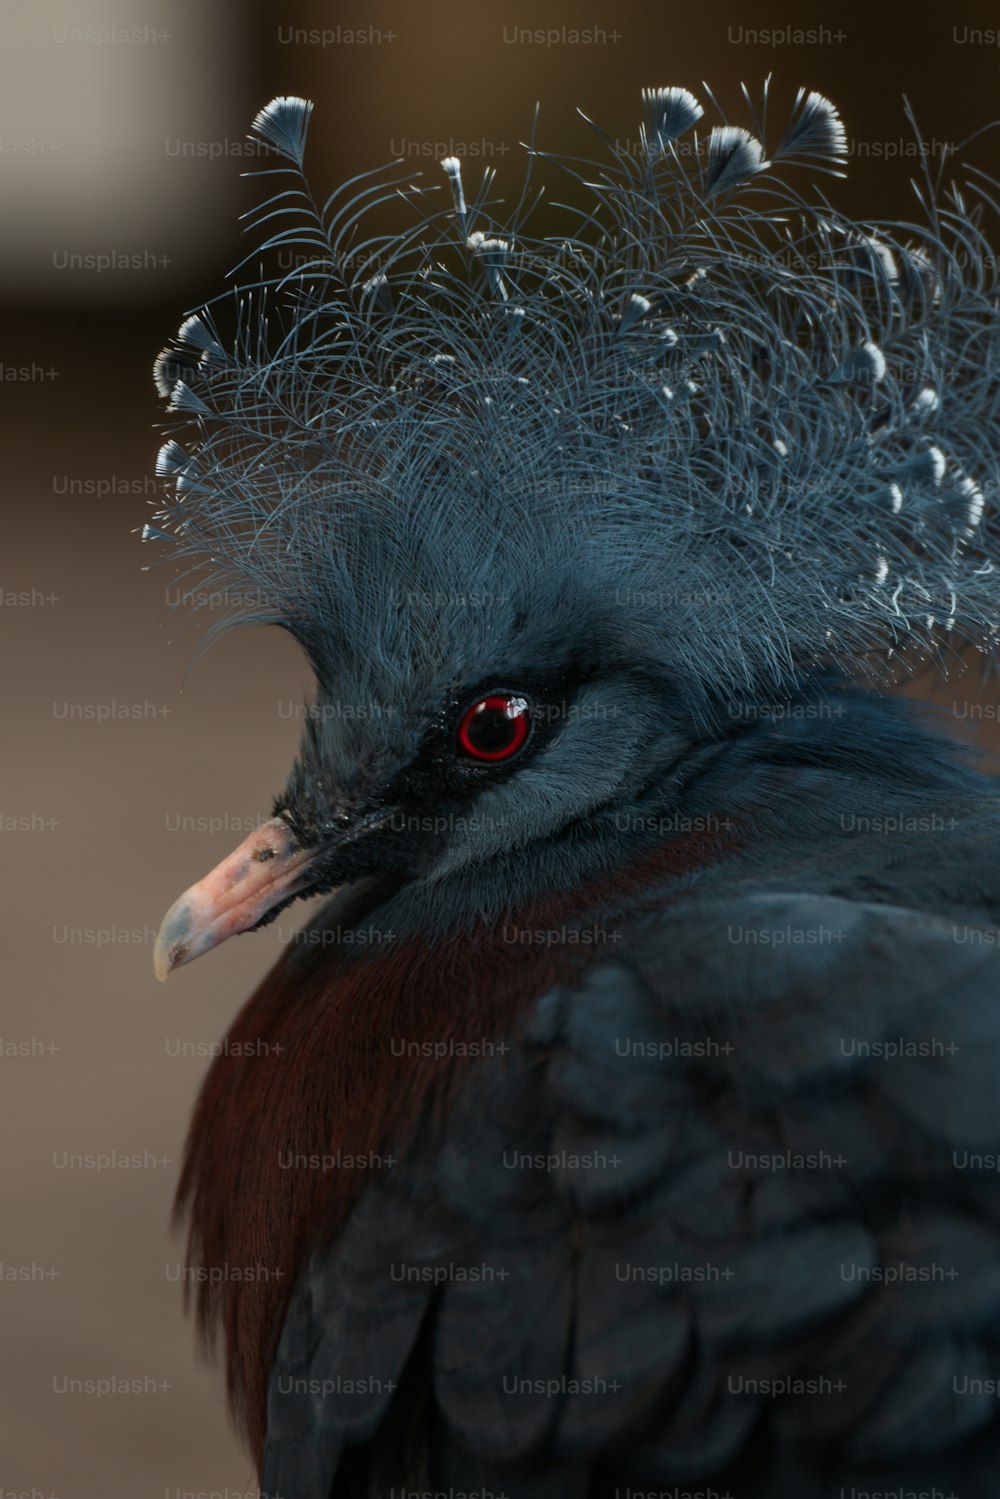 un gros plan d’un oiseau avec des plumes sur la tête